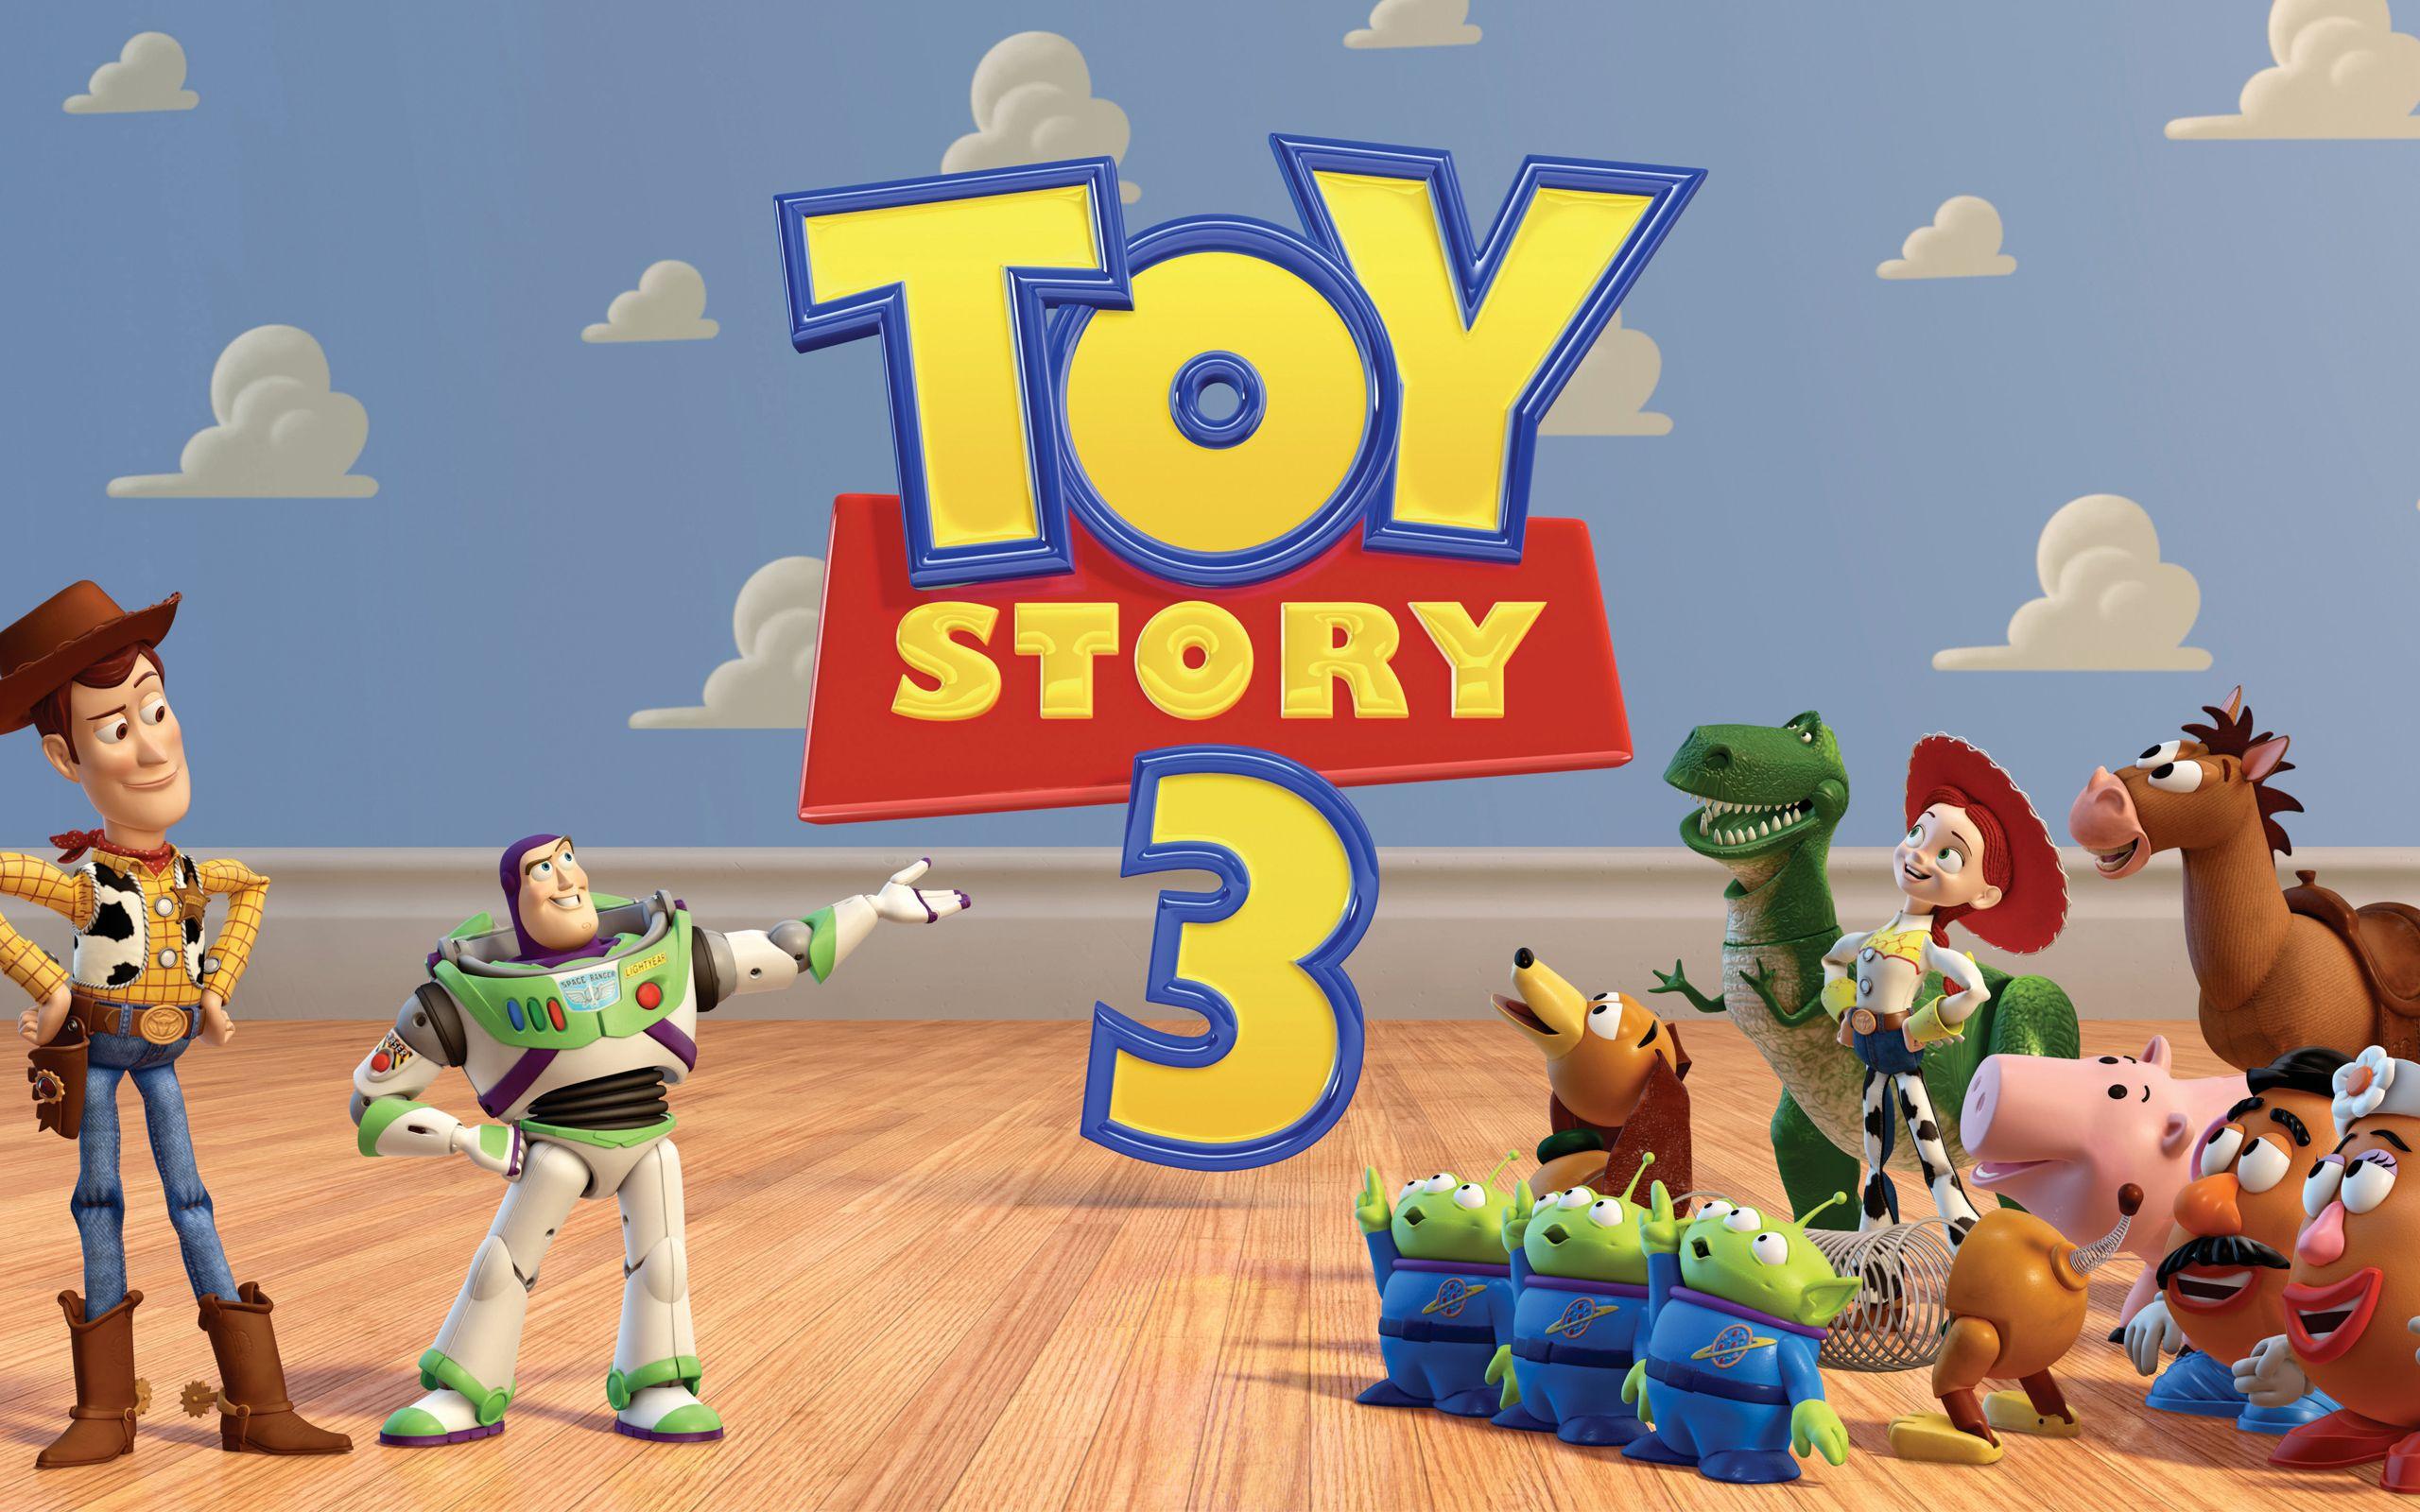 Toy Story 4 Wallpapers HD Free Download - PixelsTalk.Net